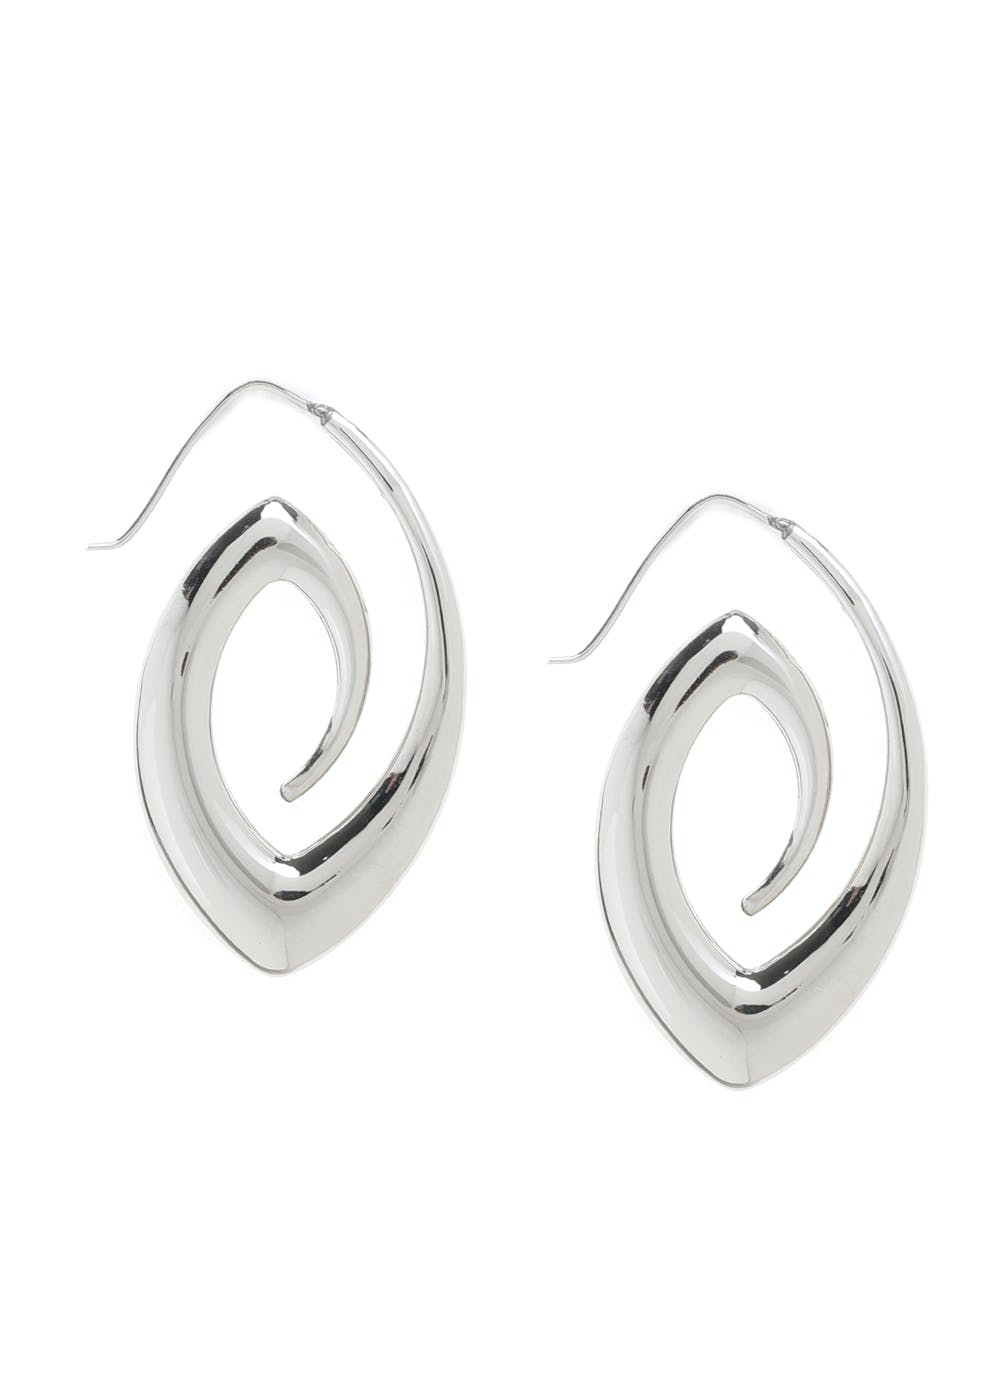 Stainless Steel Womens Studs Earrings For Men Ear Piericng Black Stone Stud  Earring Jewelry